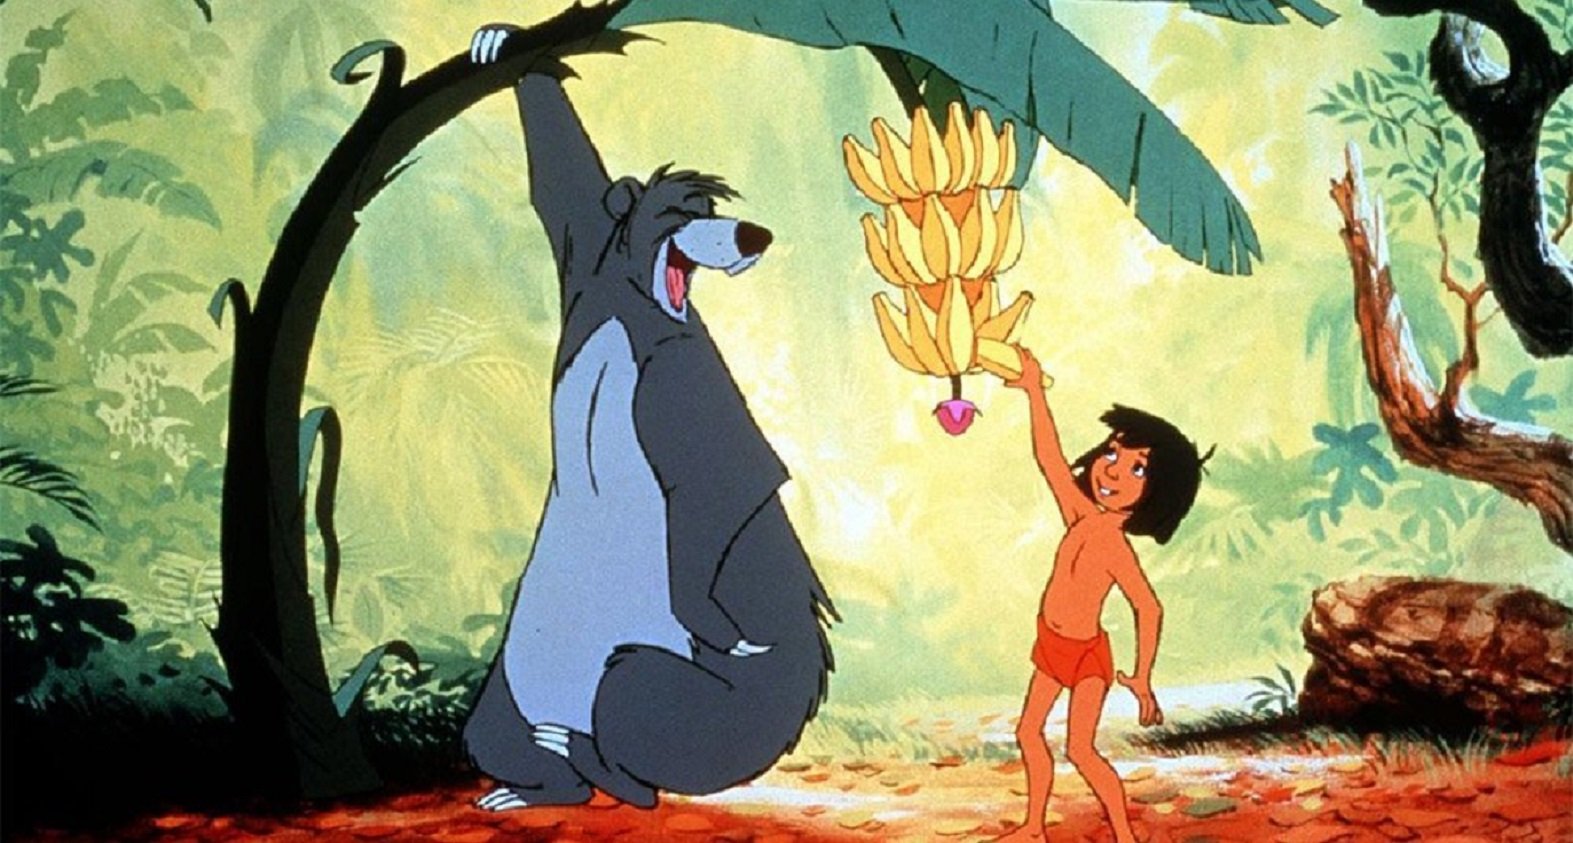 32 frases motivadoras de películas Disney para que los niños superen la vuelta al cole